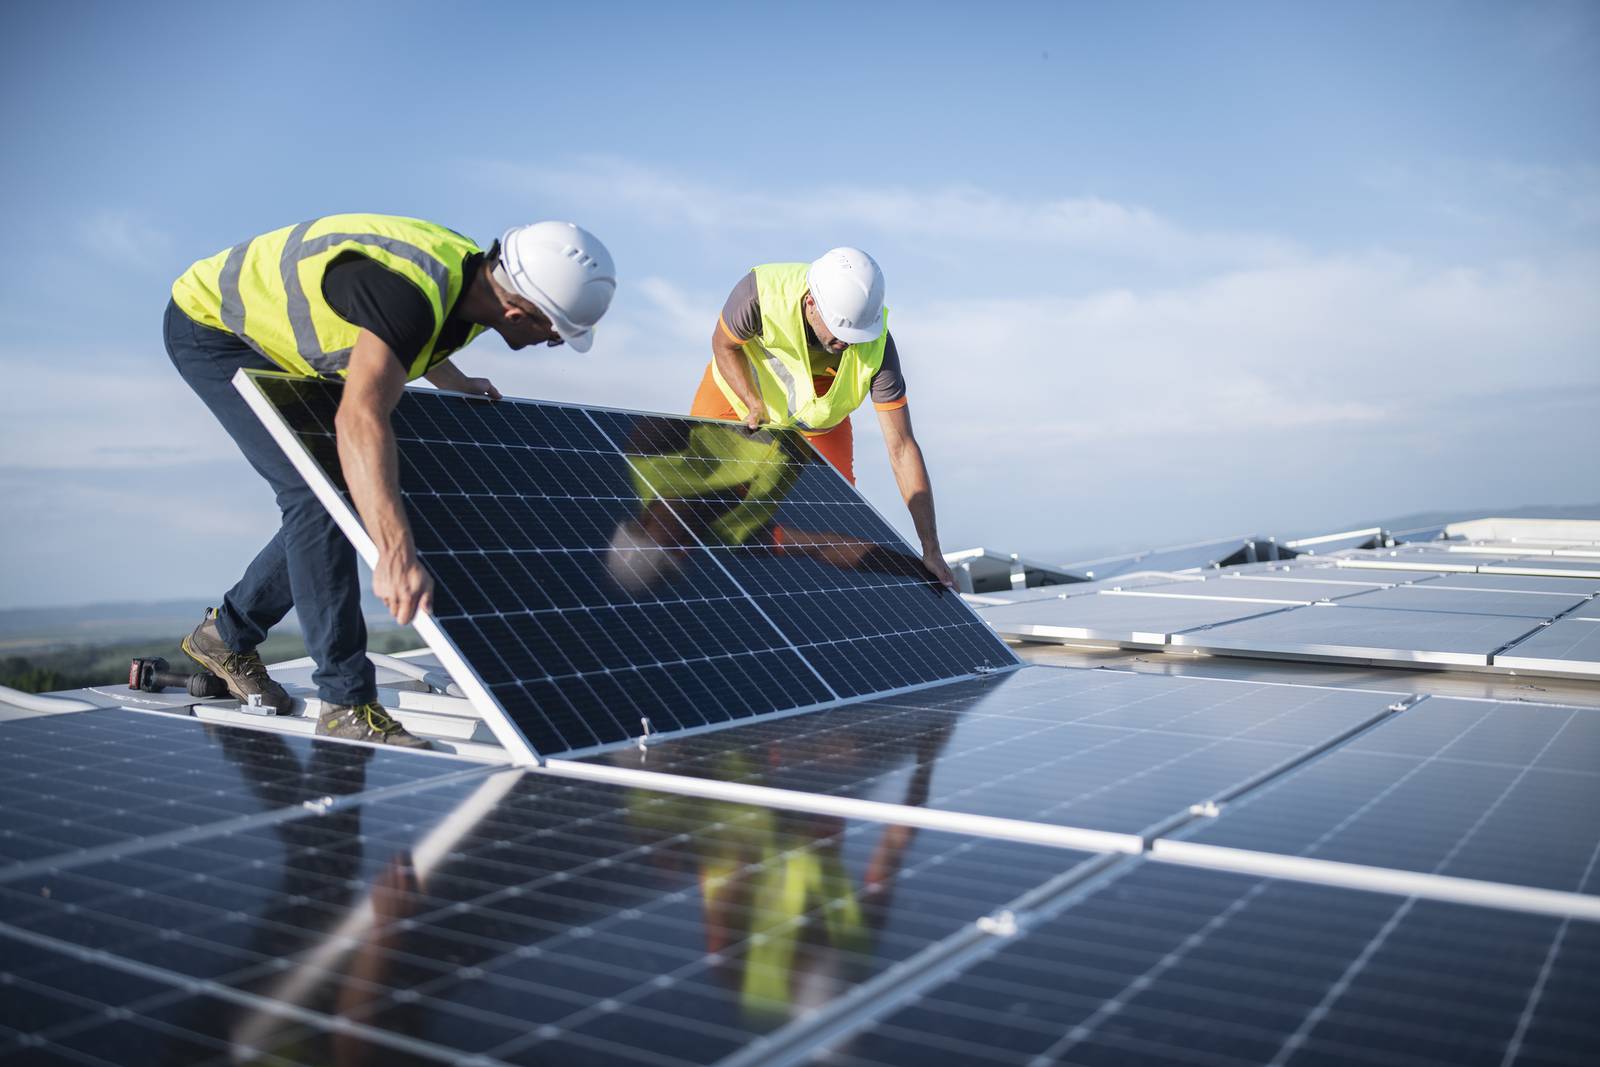 Two men in workwear installing solar panels